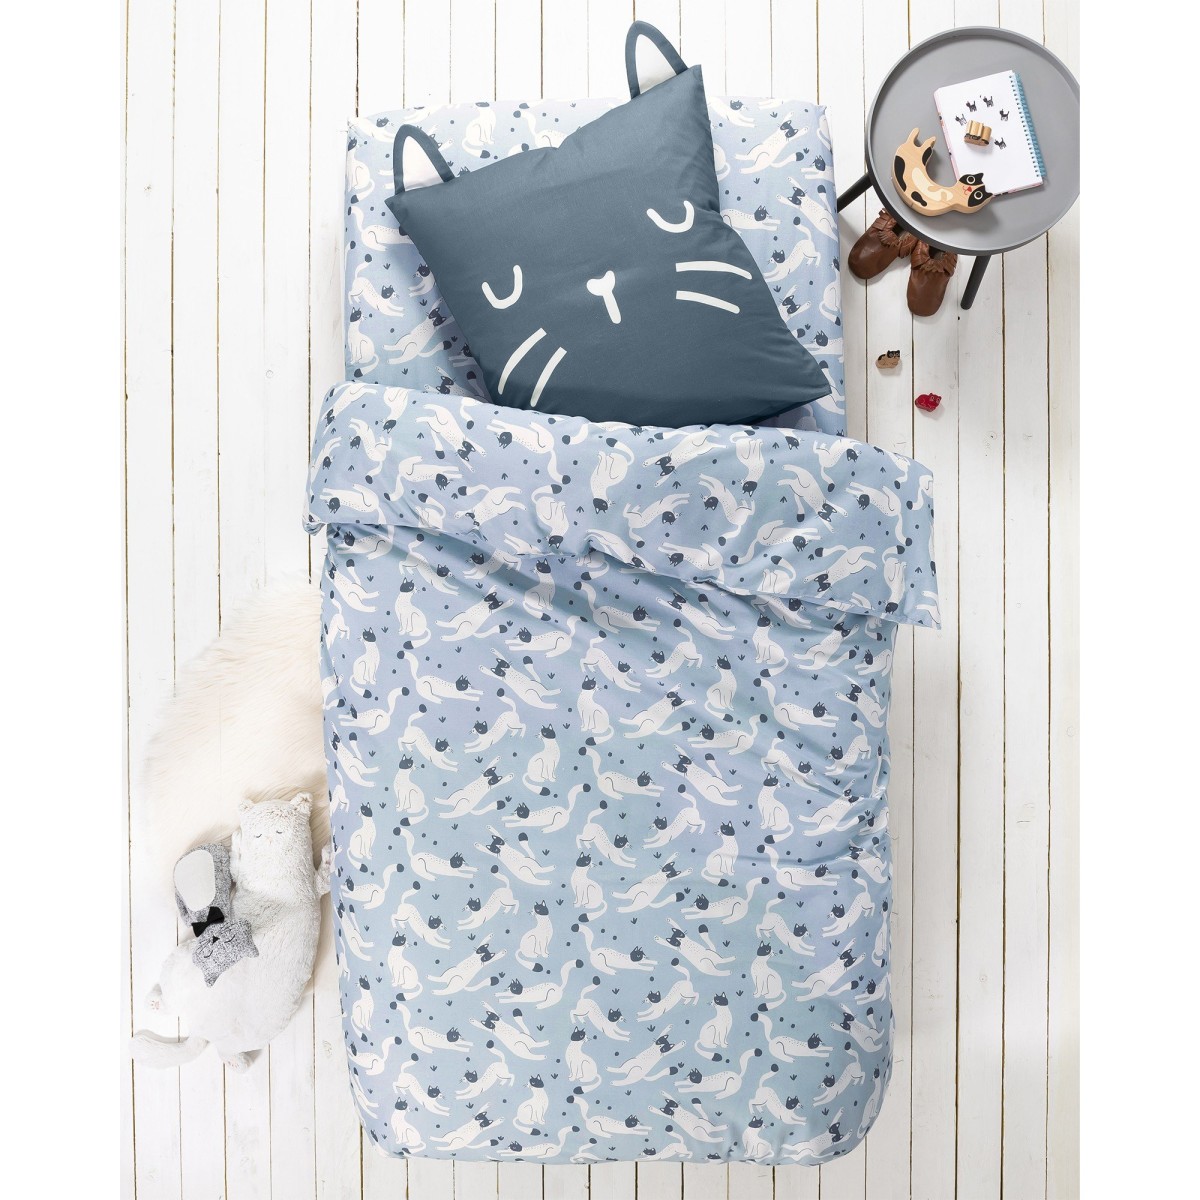 E-shop Detská posteľná bielizeň Mňau s potlačou, pre 1 osobu, bavlna